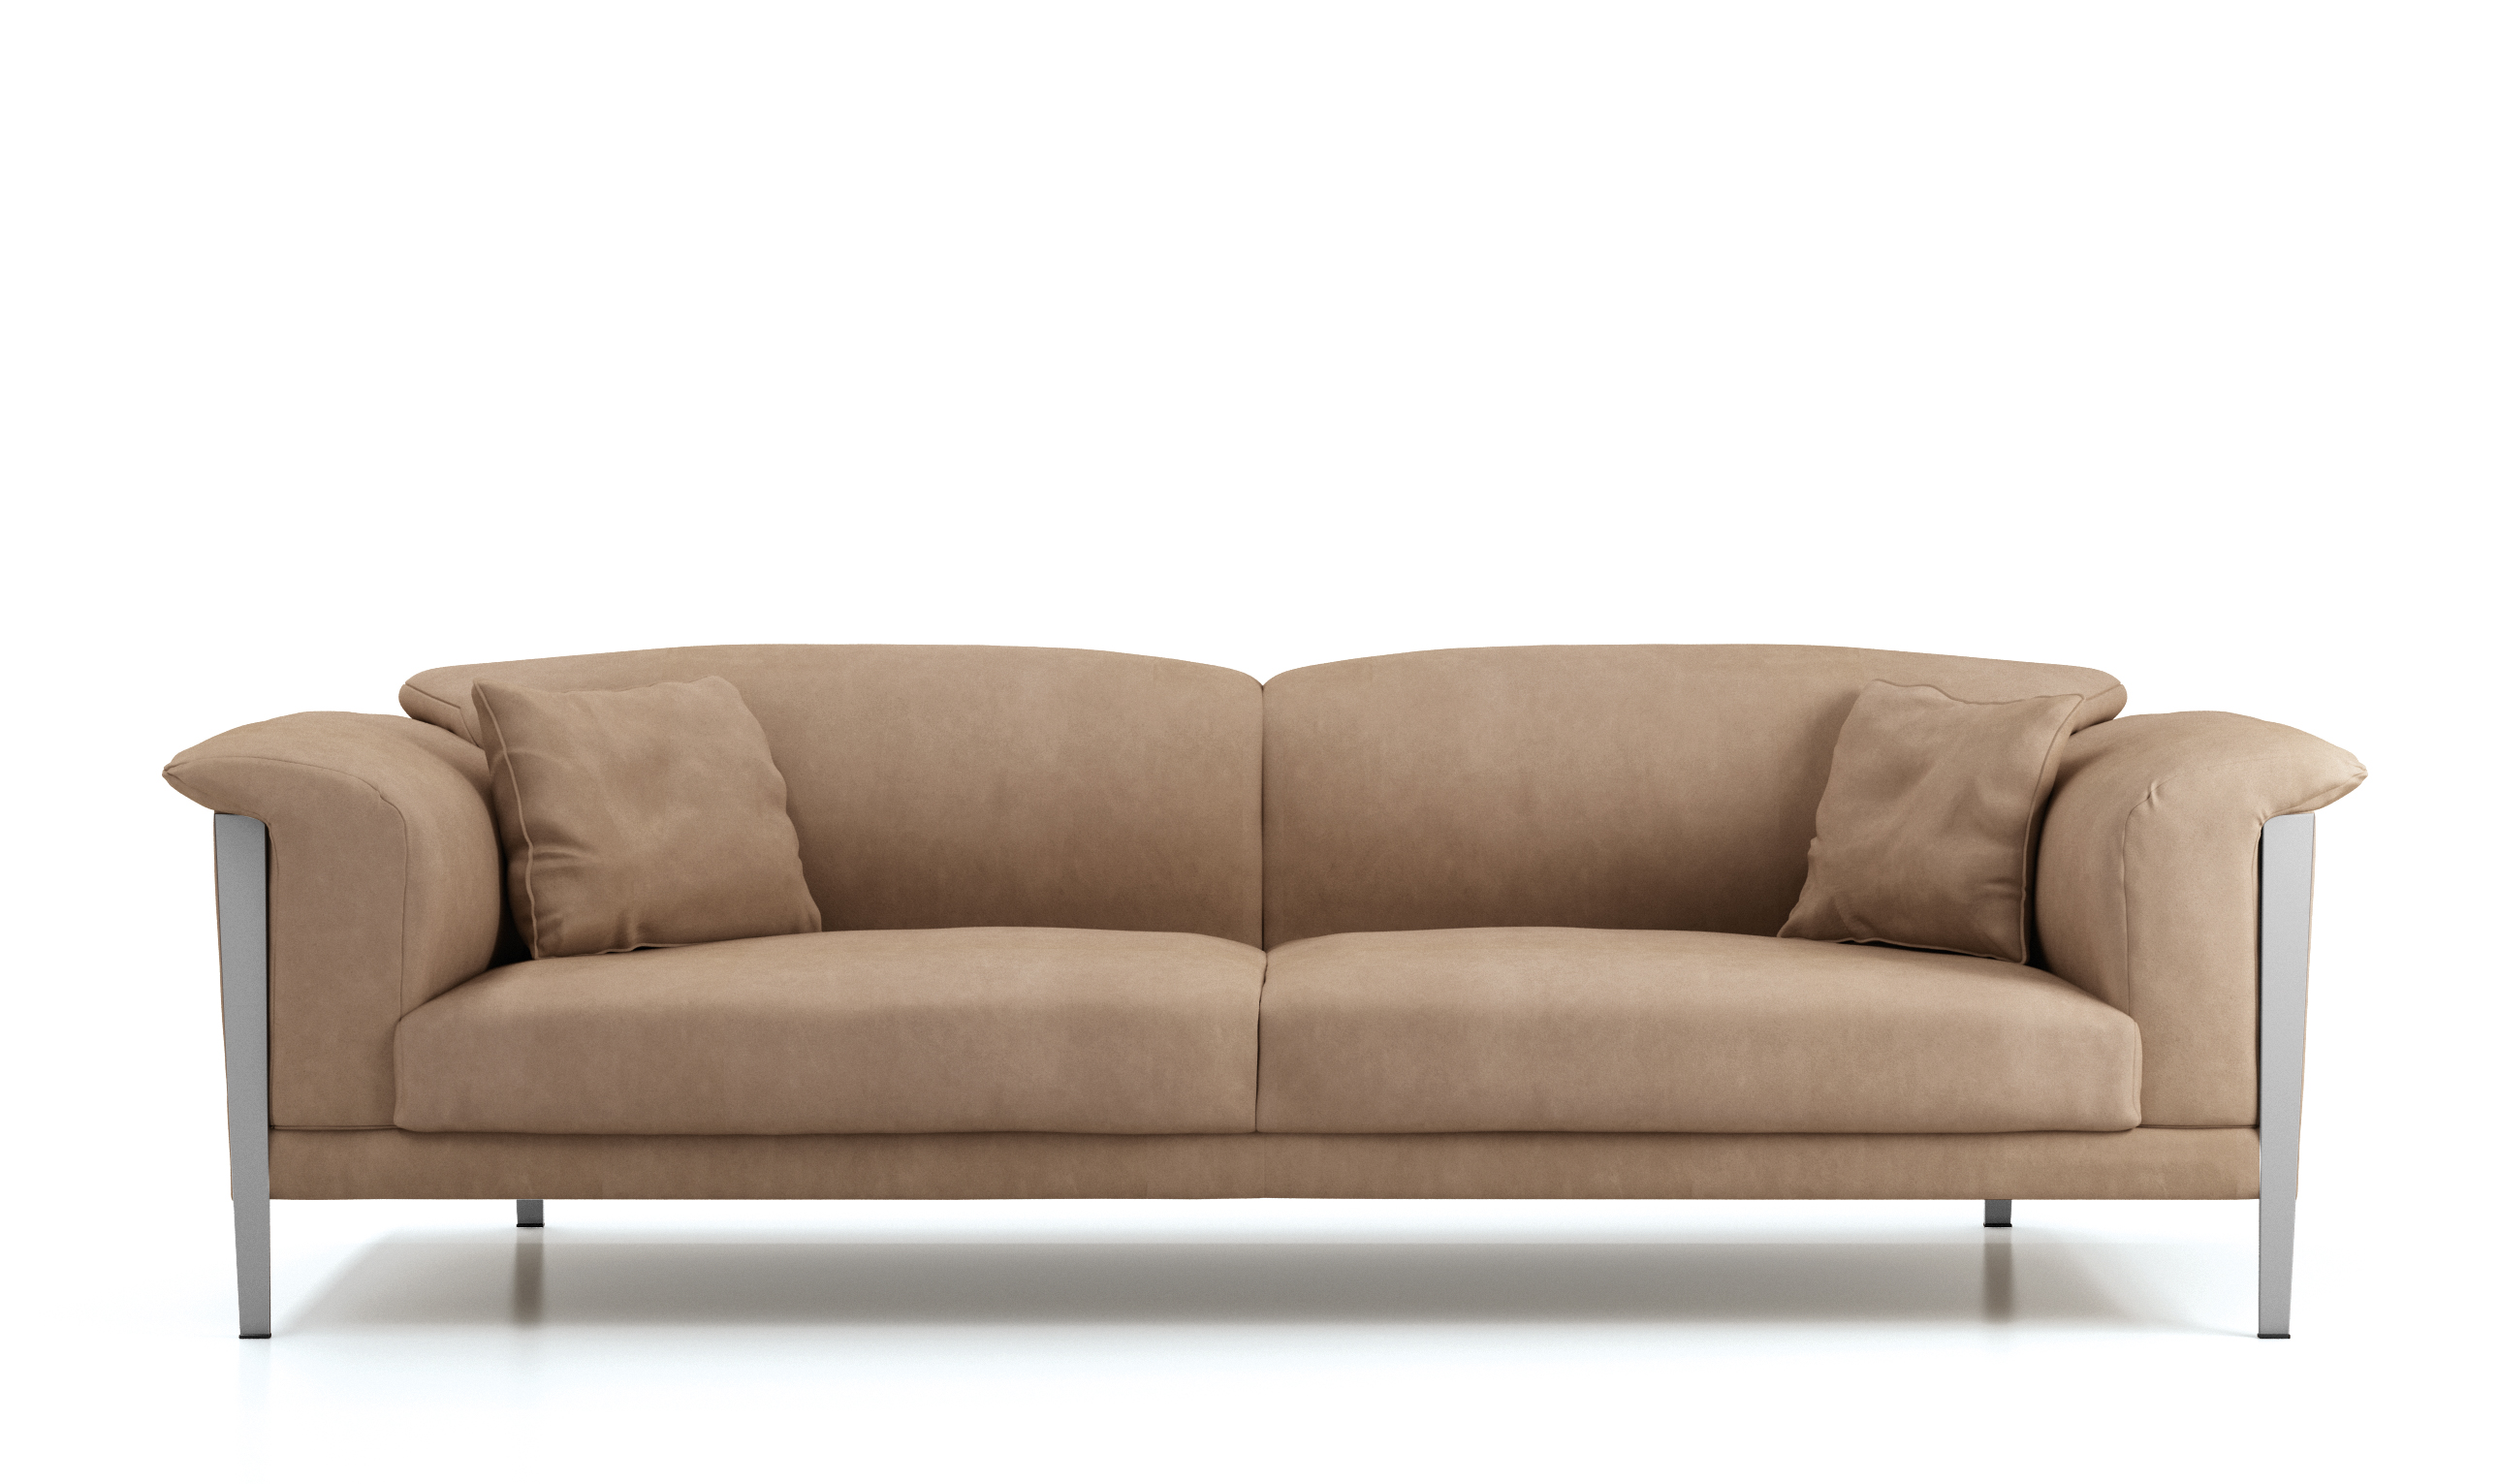 cream color leather sofa set